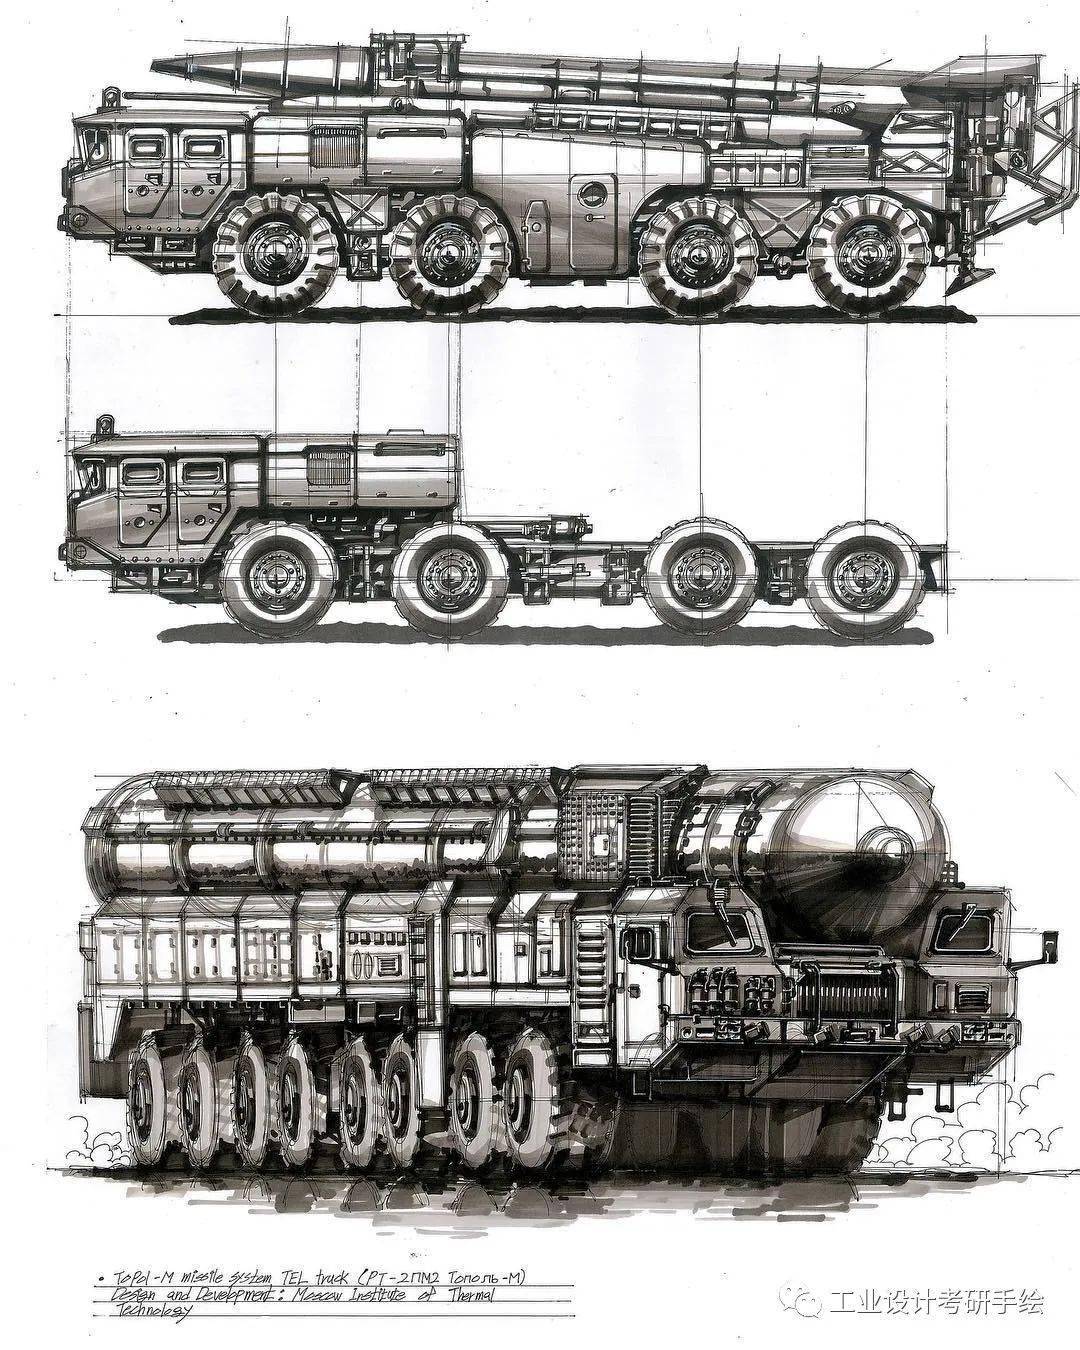 覆盖所有工业设计考研手绘内容,包学包会,你也可以画出你设计的装甲车